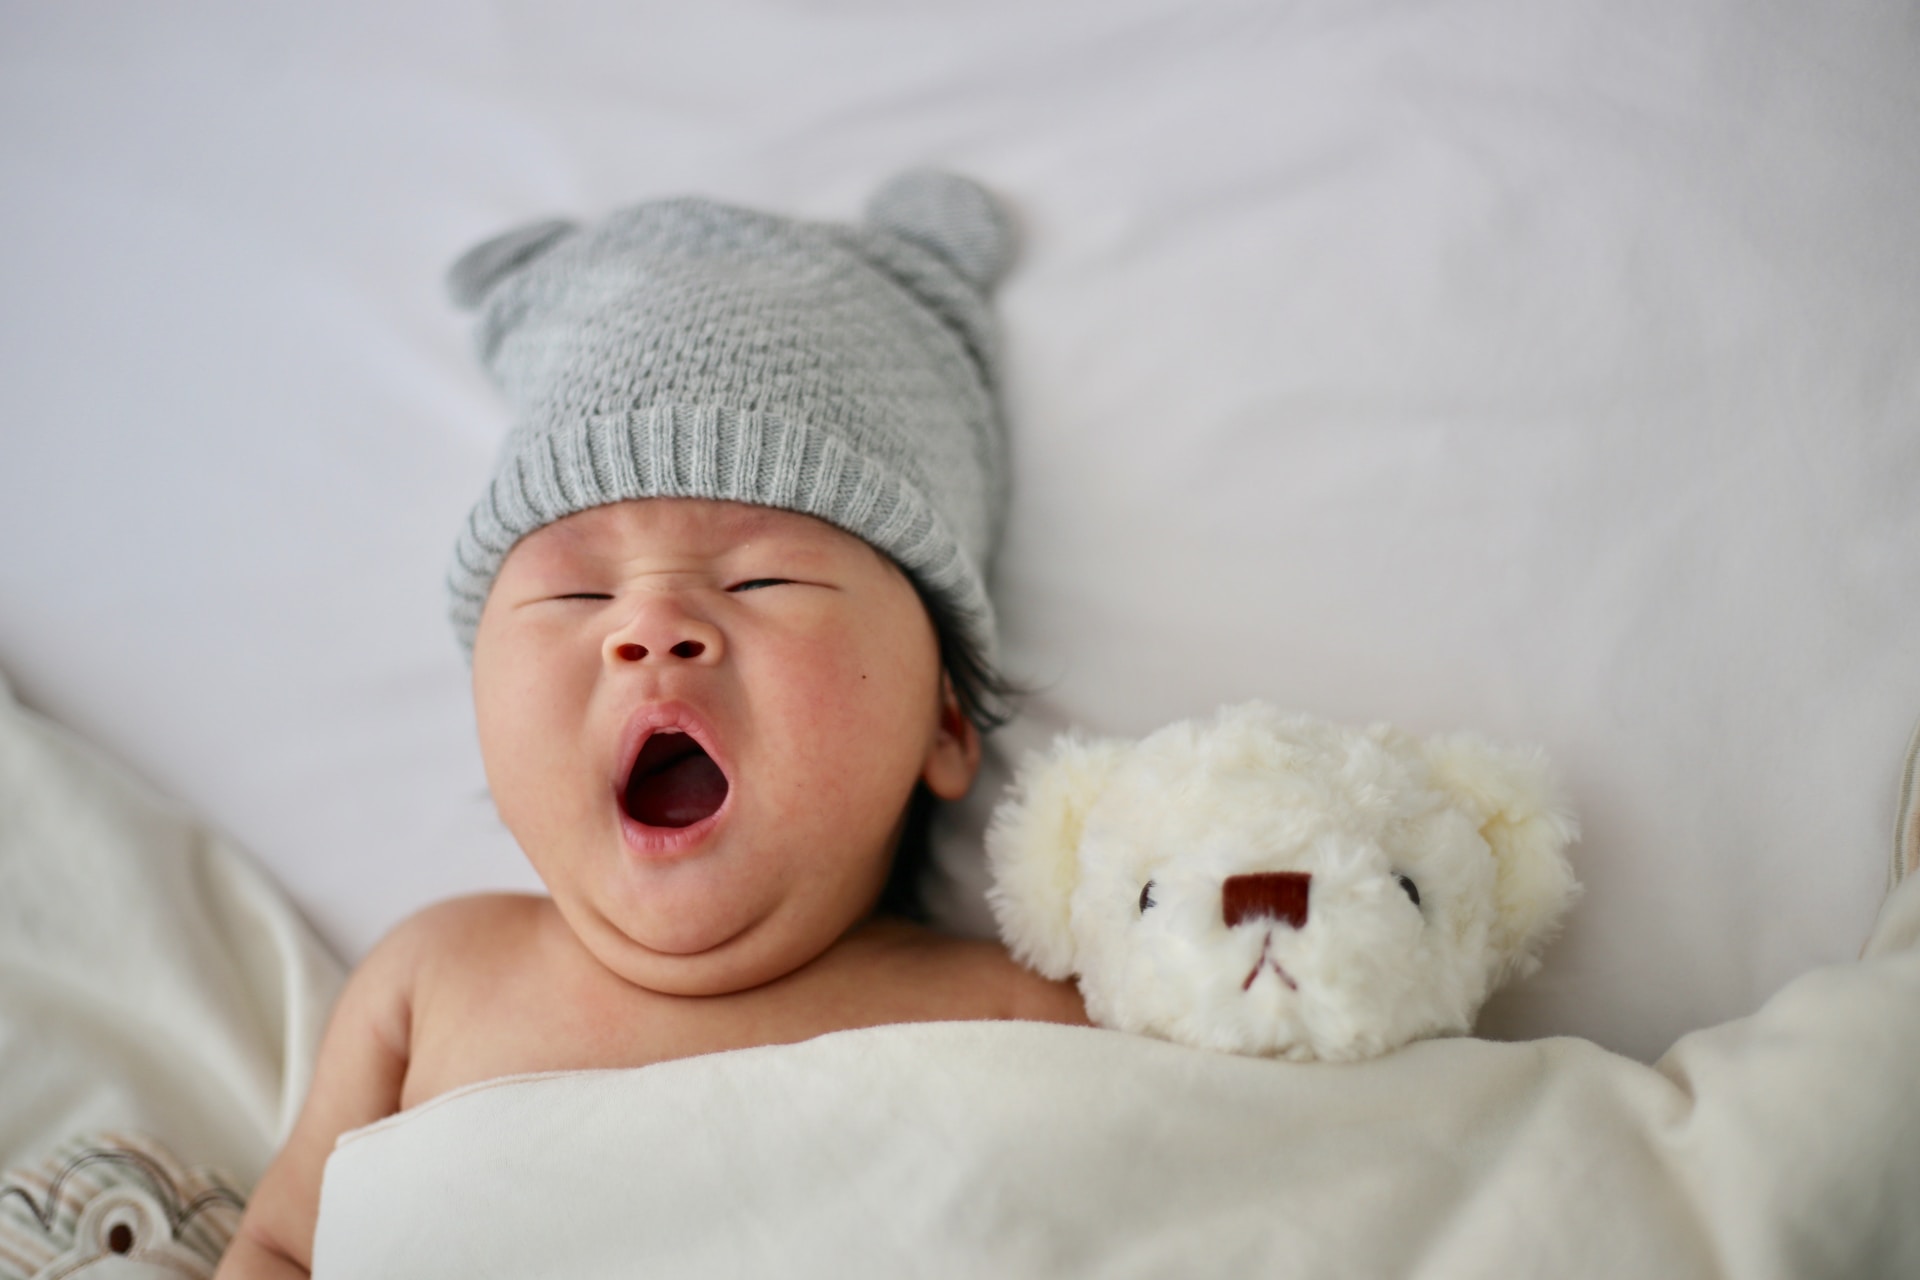 Puslebordet: En uundværlig del af plejen af nyfødte